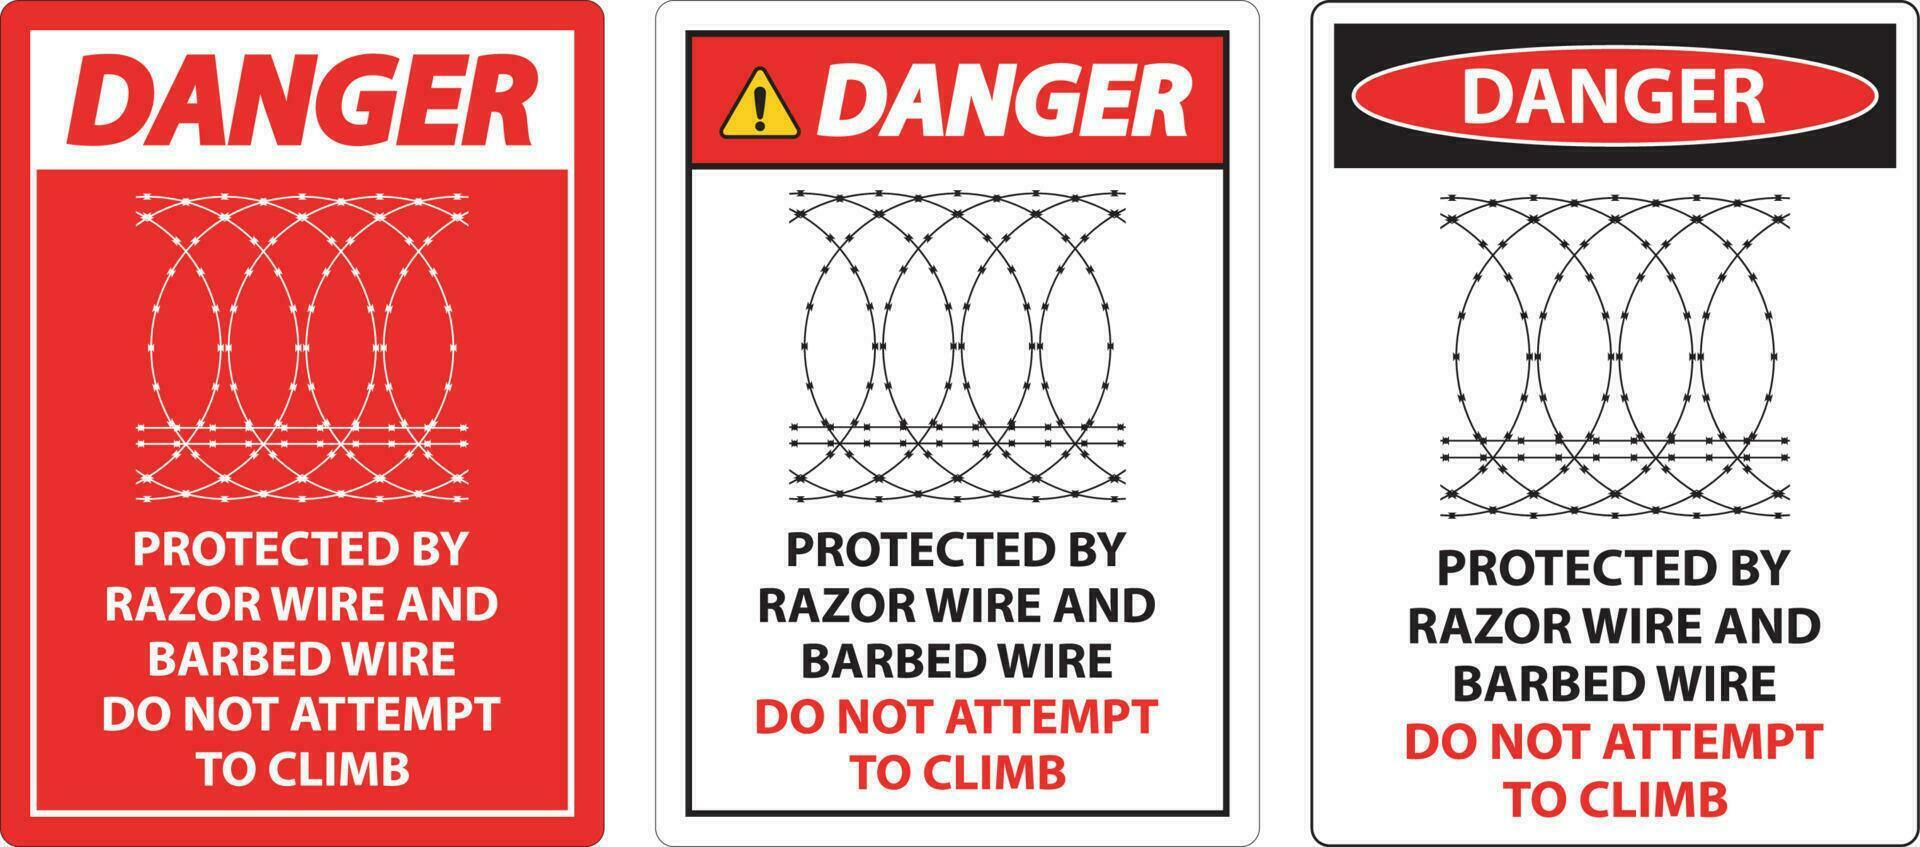 peligro protegido por maquinilla de afeitar cable y mordaz cable, hacer no escalada firmar vector